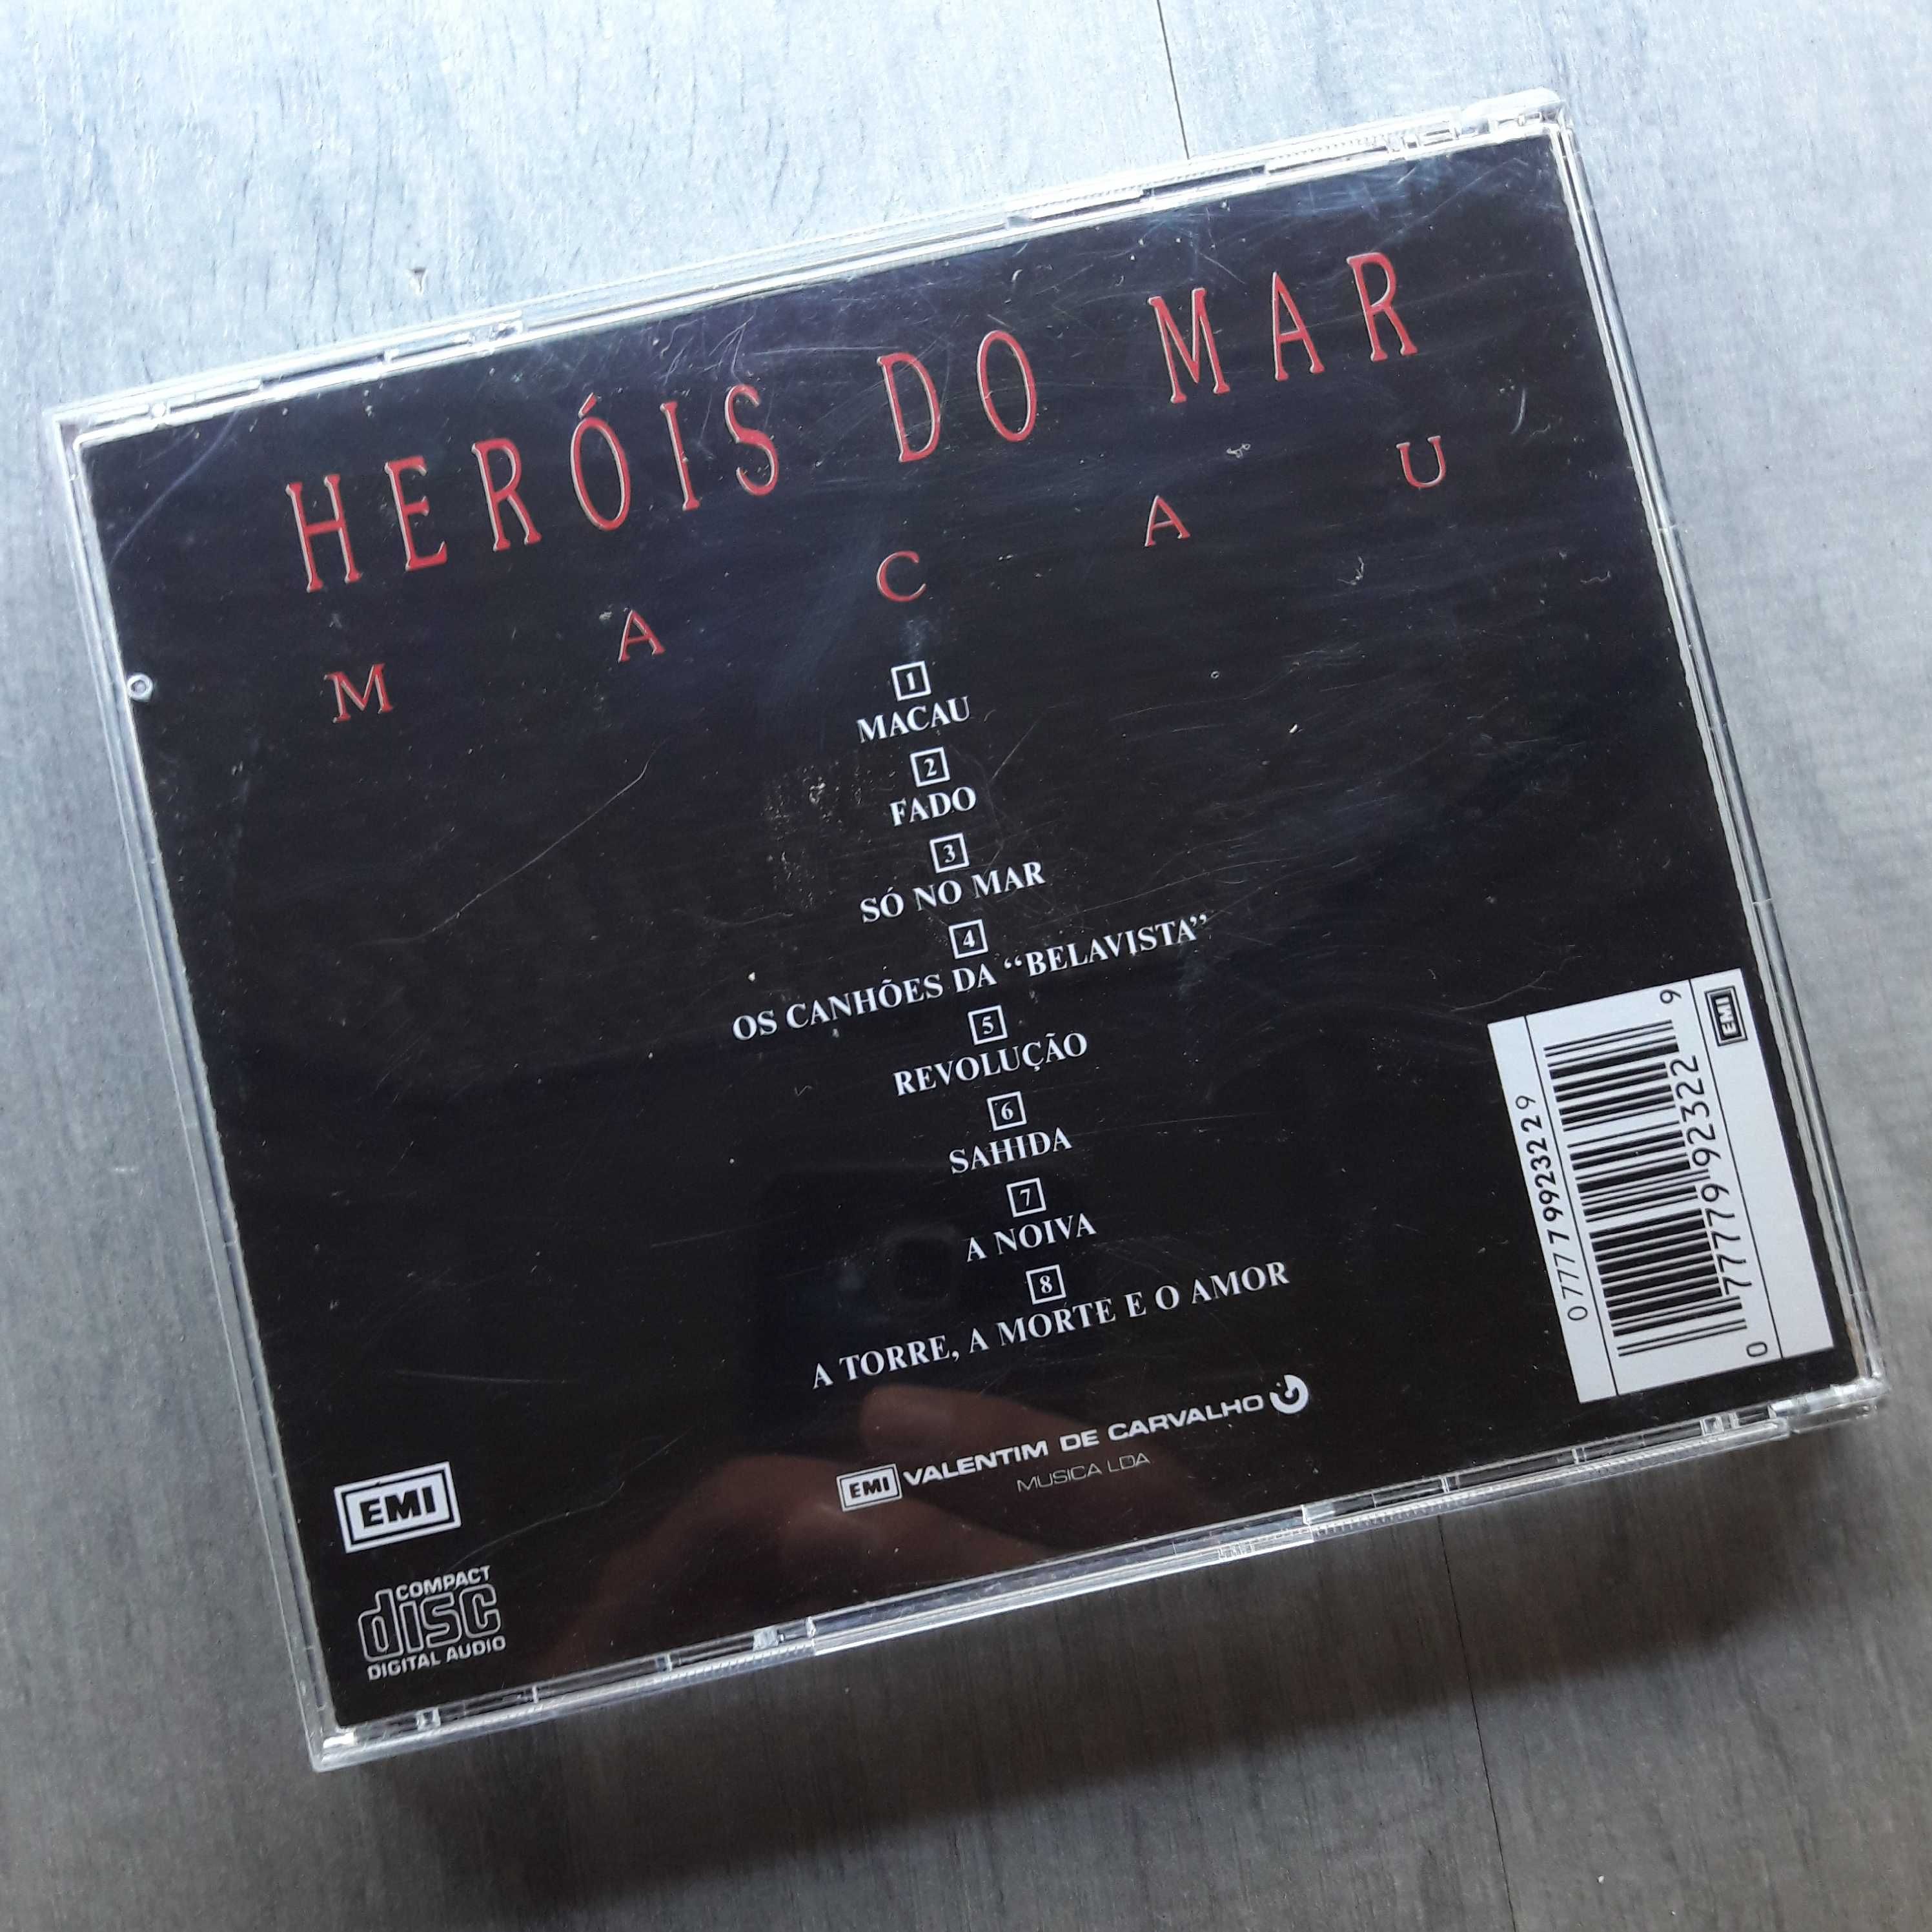 Heróis do Mar CD Macau Edição Original